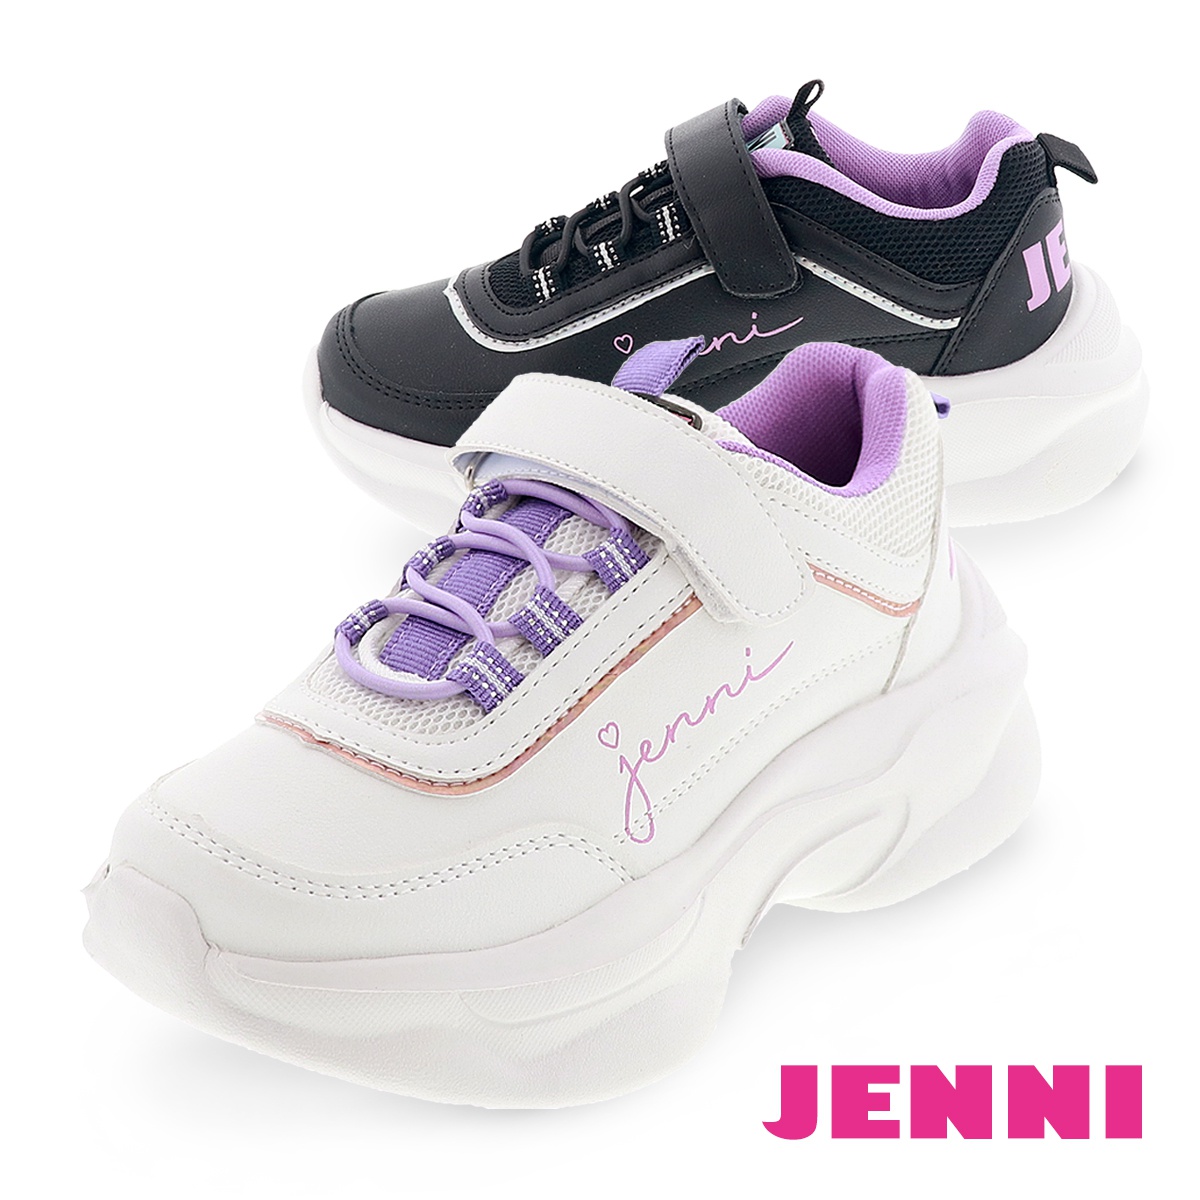 ジェニィ ジュニア スニーカー 厚底 ローカット キッズ シューズ ティーン 女の子 かわいい オシャレ 靴 Jenni 22ss008 ホワイト ブラック 21 0cm 24 0cm 靴のシューマート 通販 Paypayモール